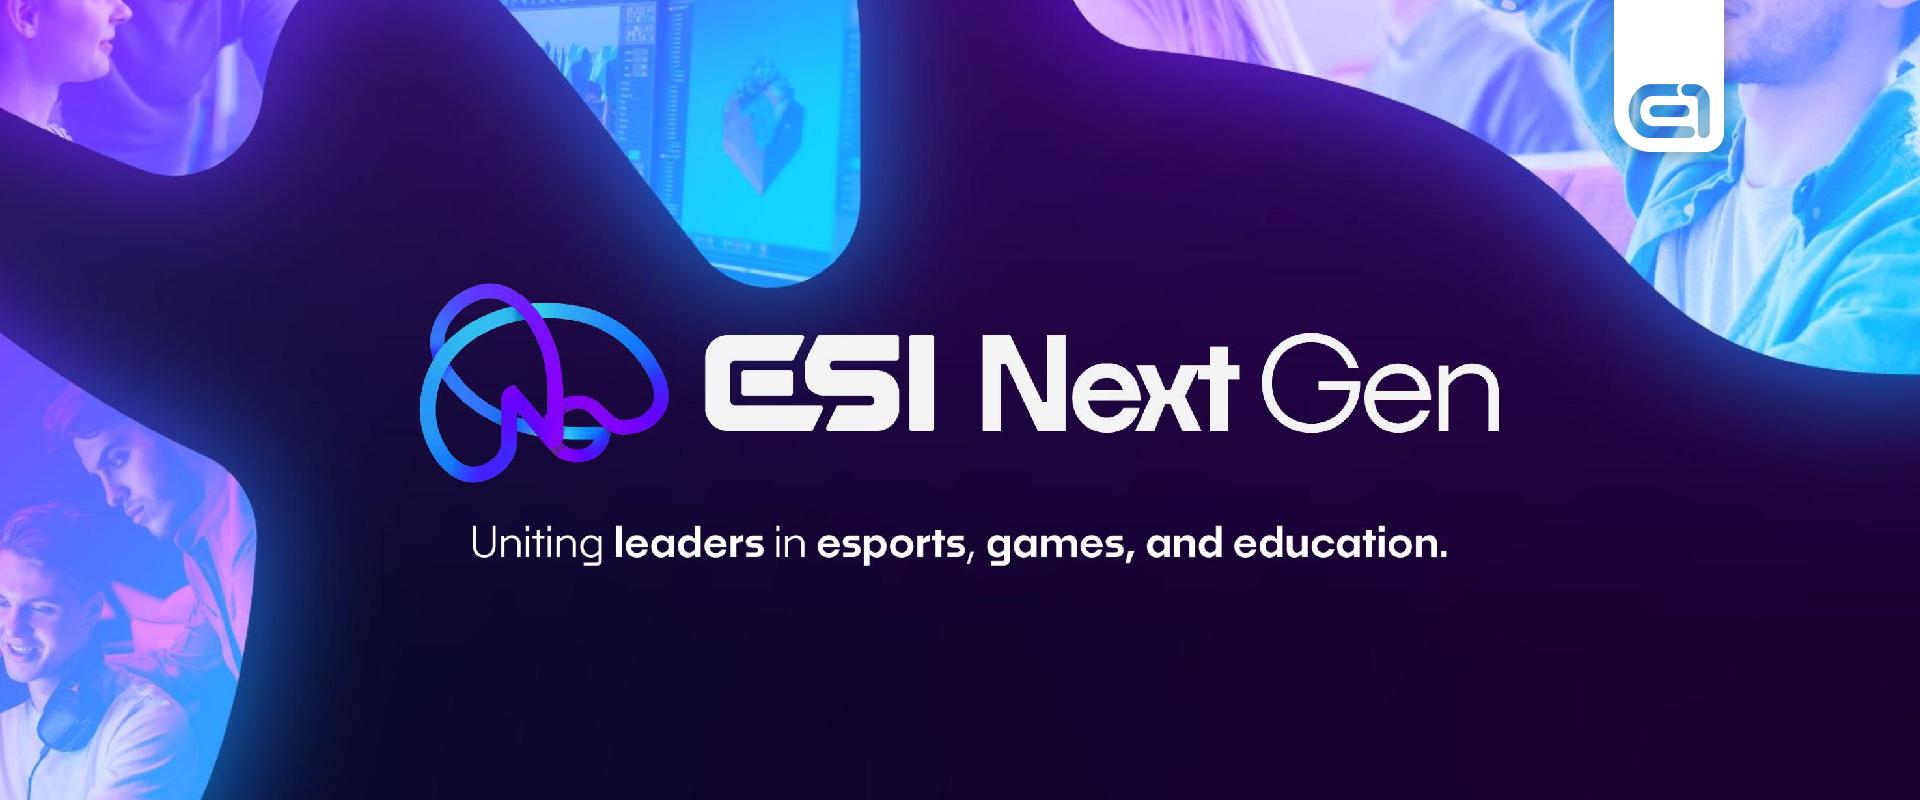 Jön az első ESI Next Gen!